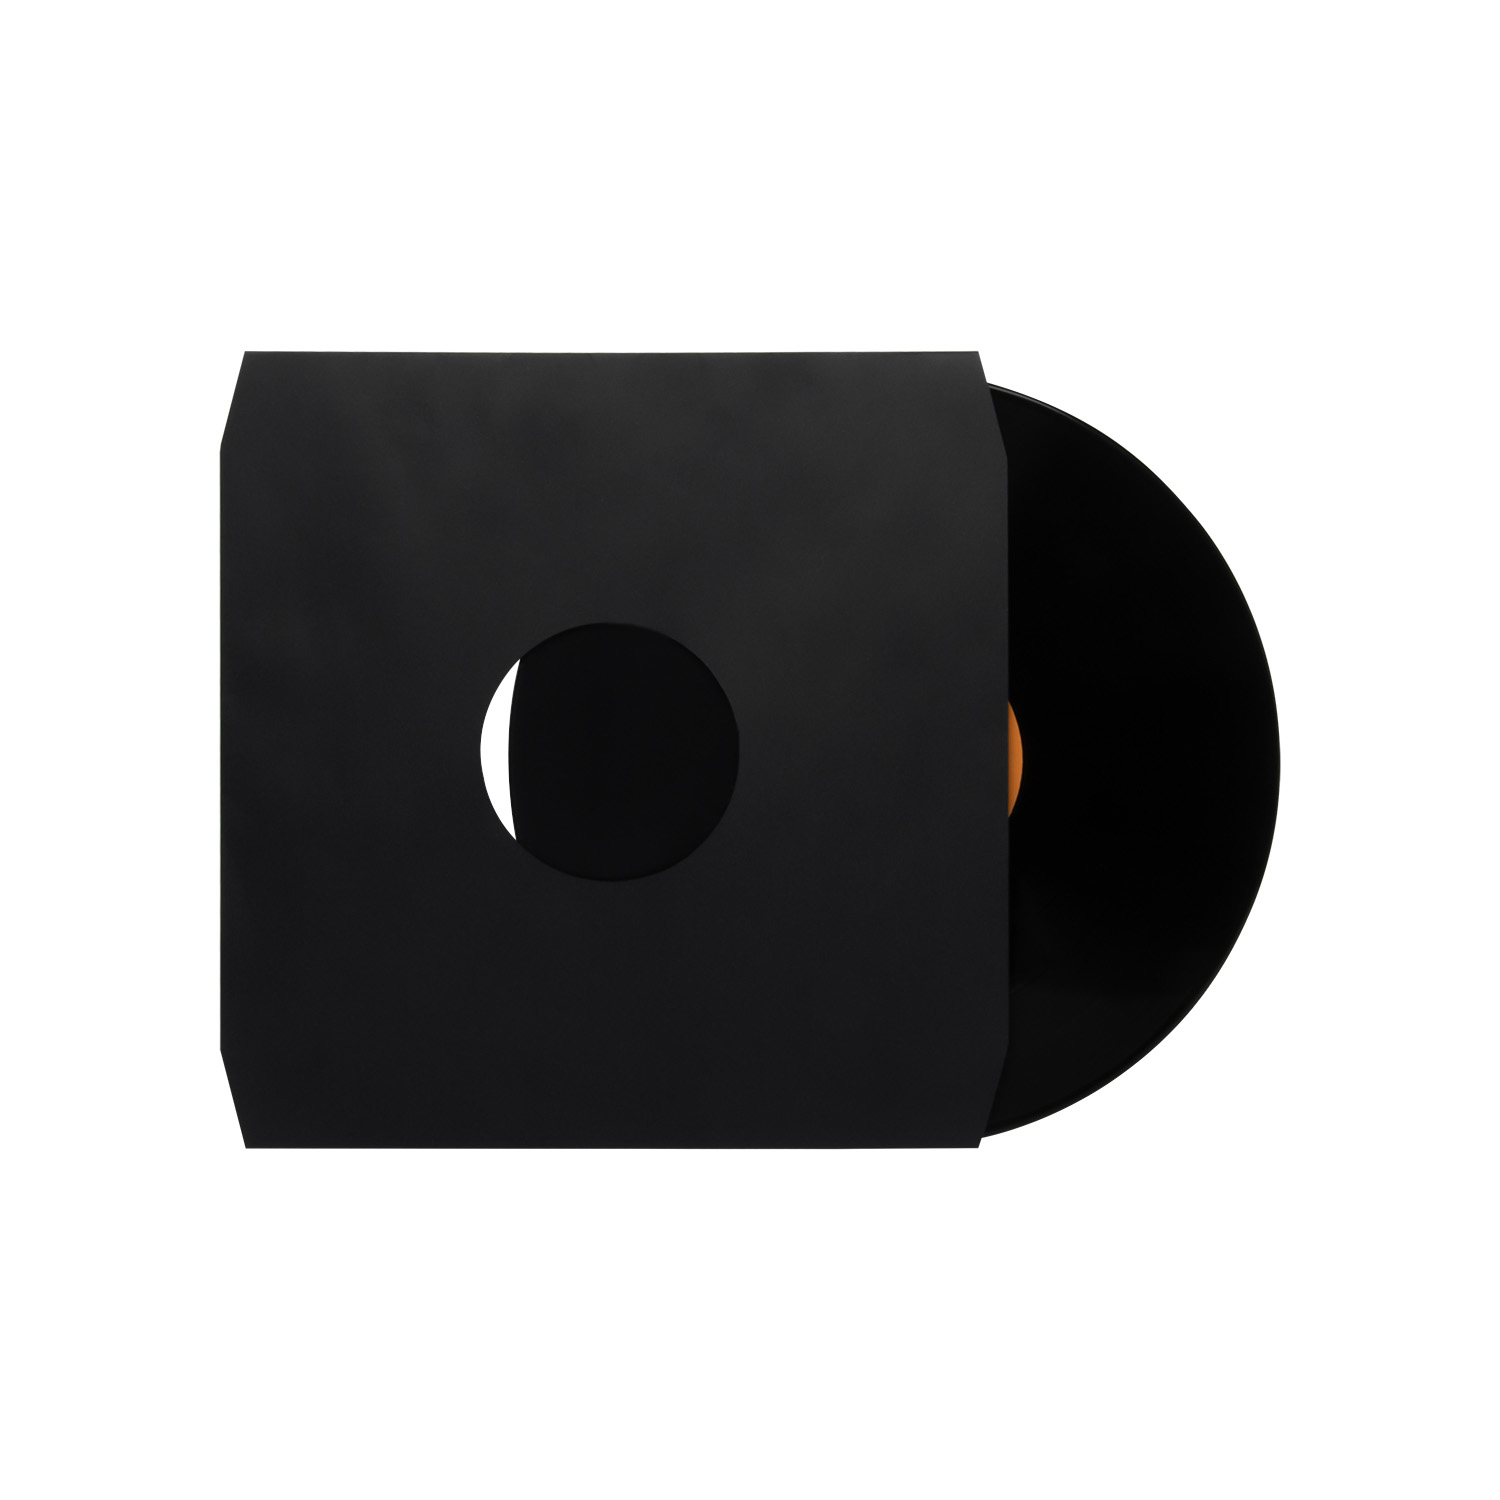 Fundas interiores de vinilo para discos: papel resistente libre de ácido con esquinas cortadas para almacenamiento de discos LP